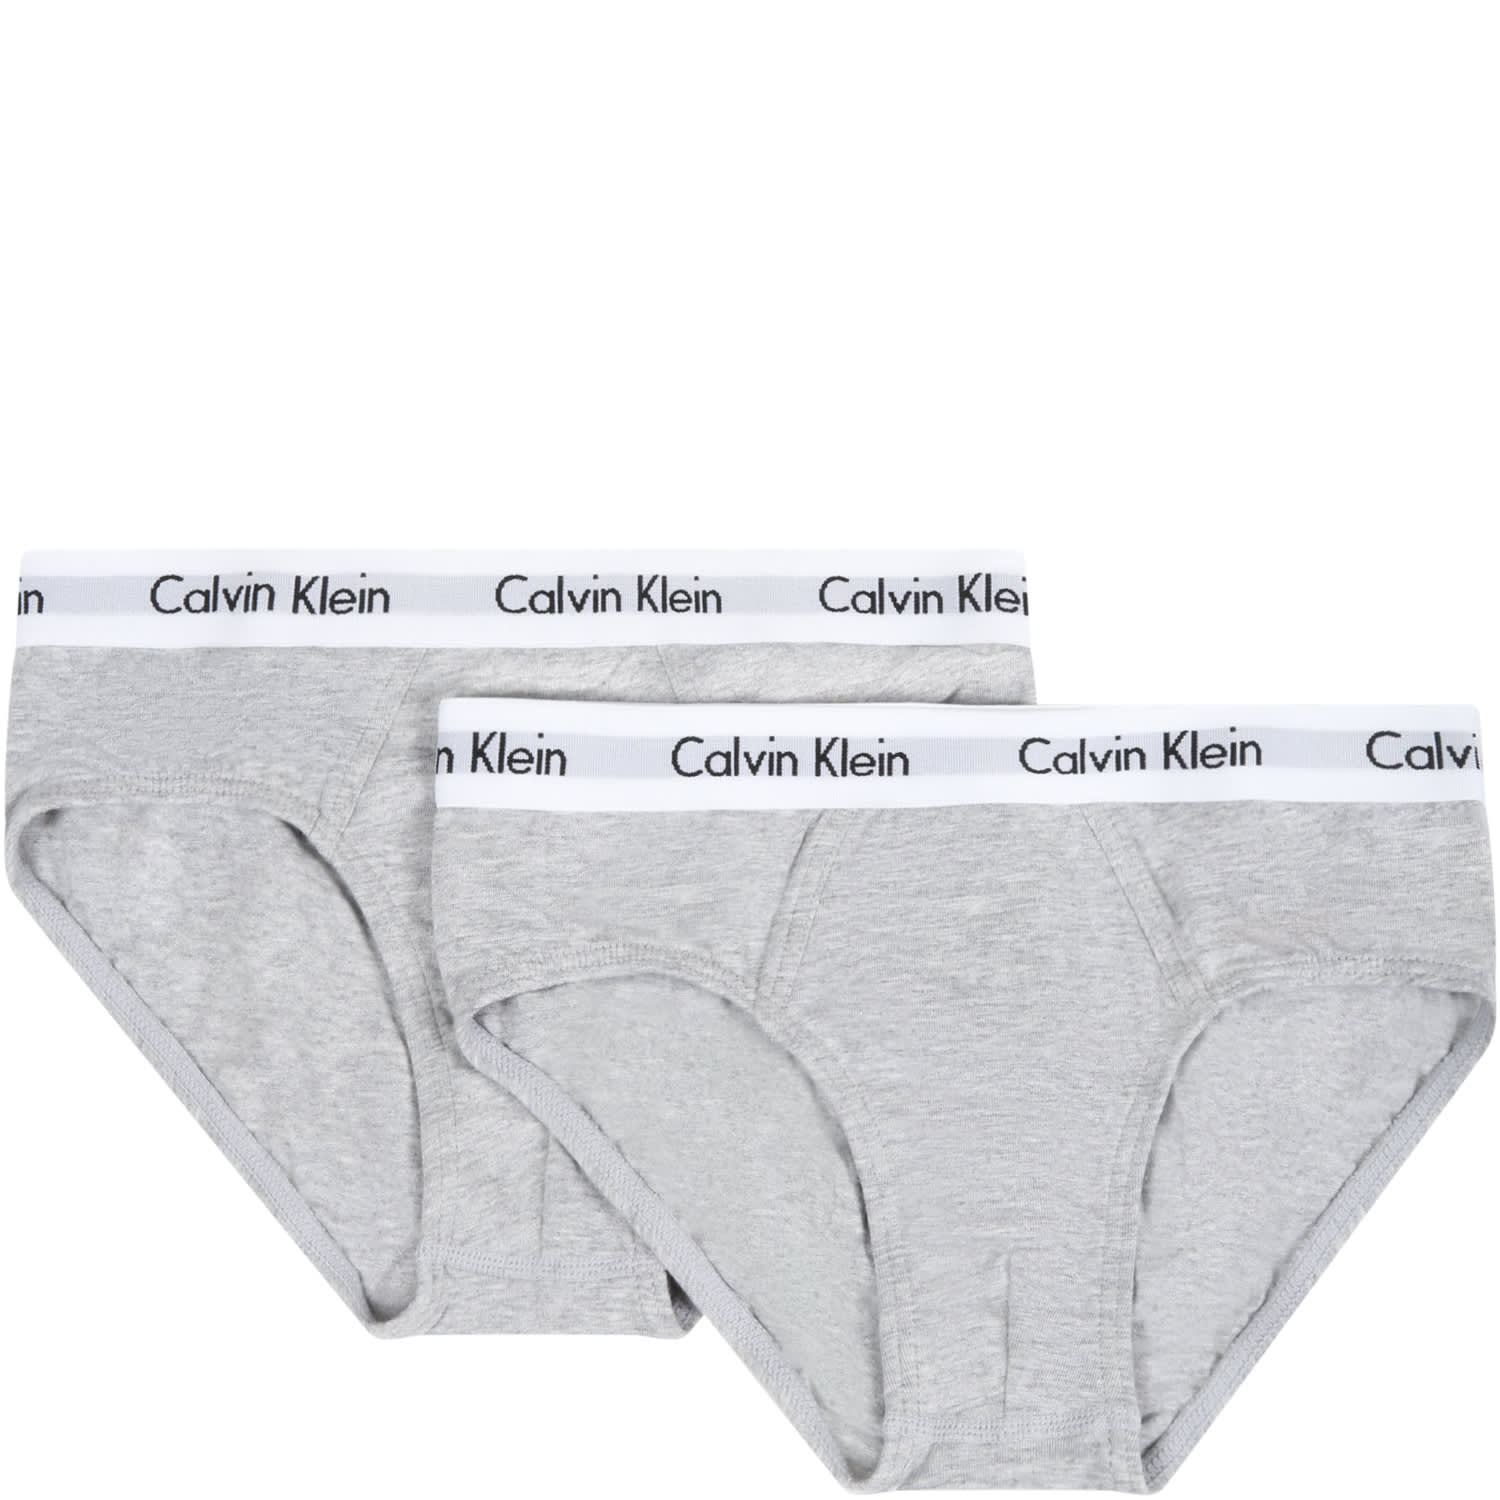 Calvin Klein Grey Set For Boy With Logos